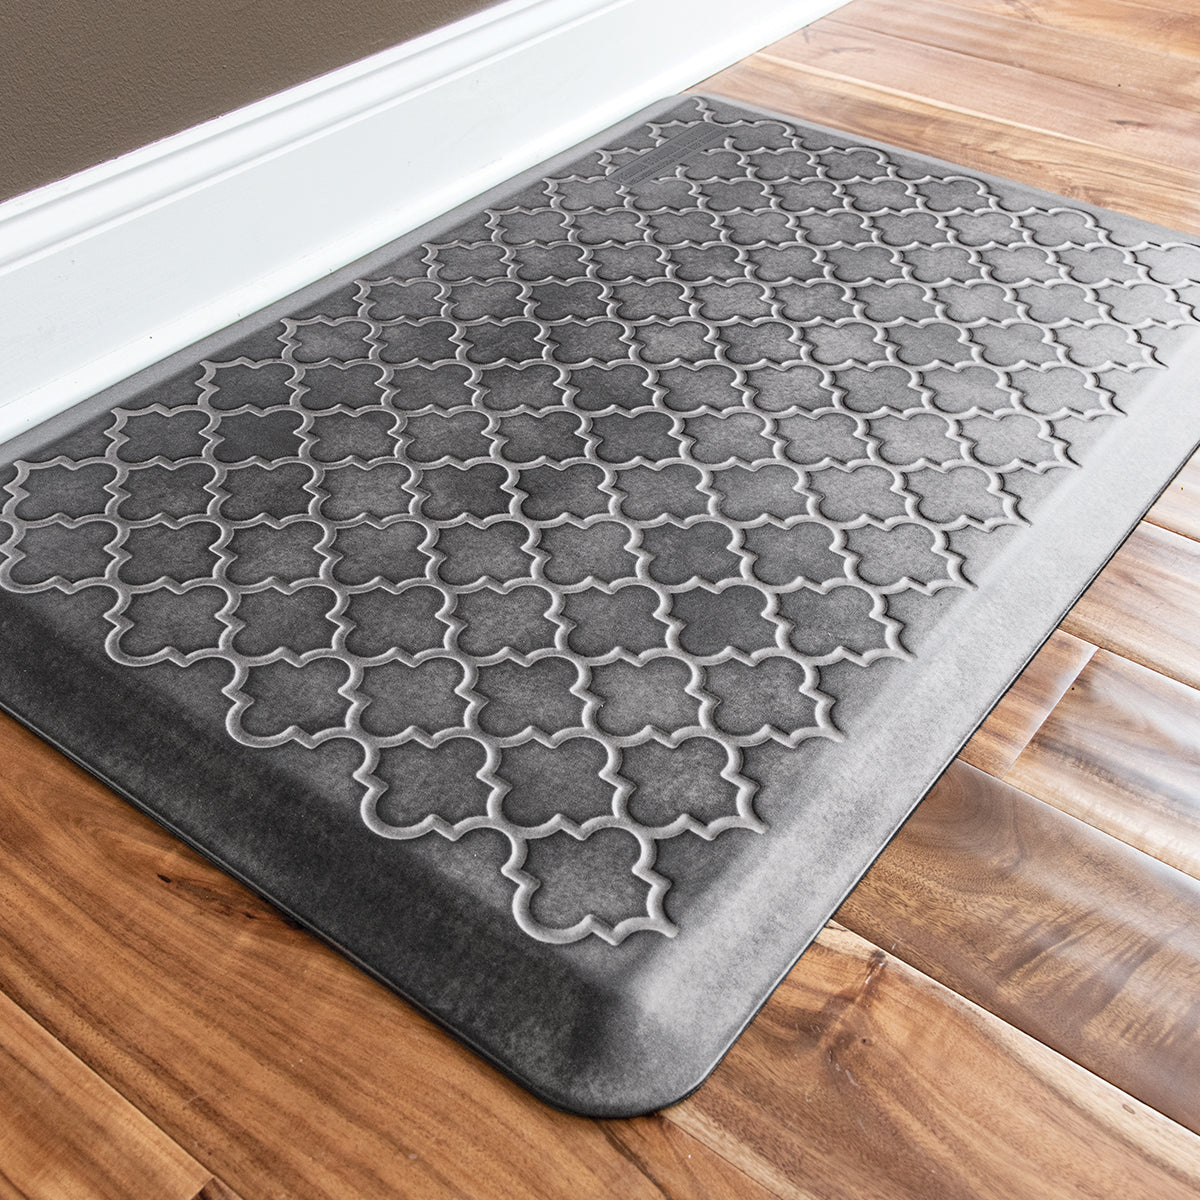 Smart Step Supreme - Anti-fatigue Floor Mat by Wellness Mats